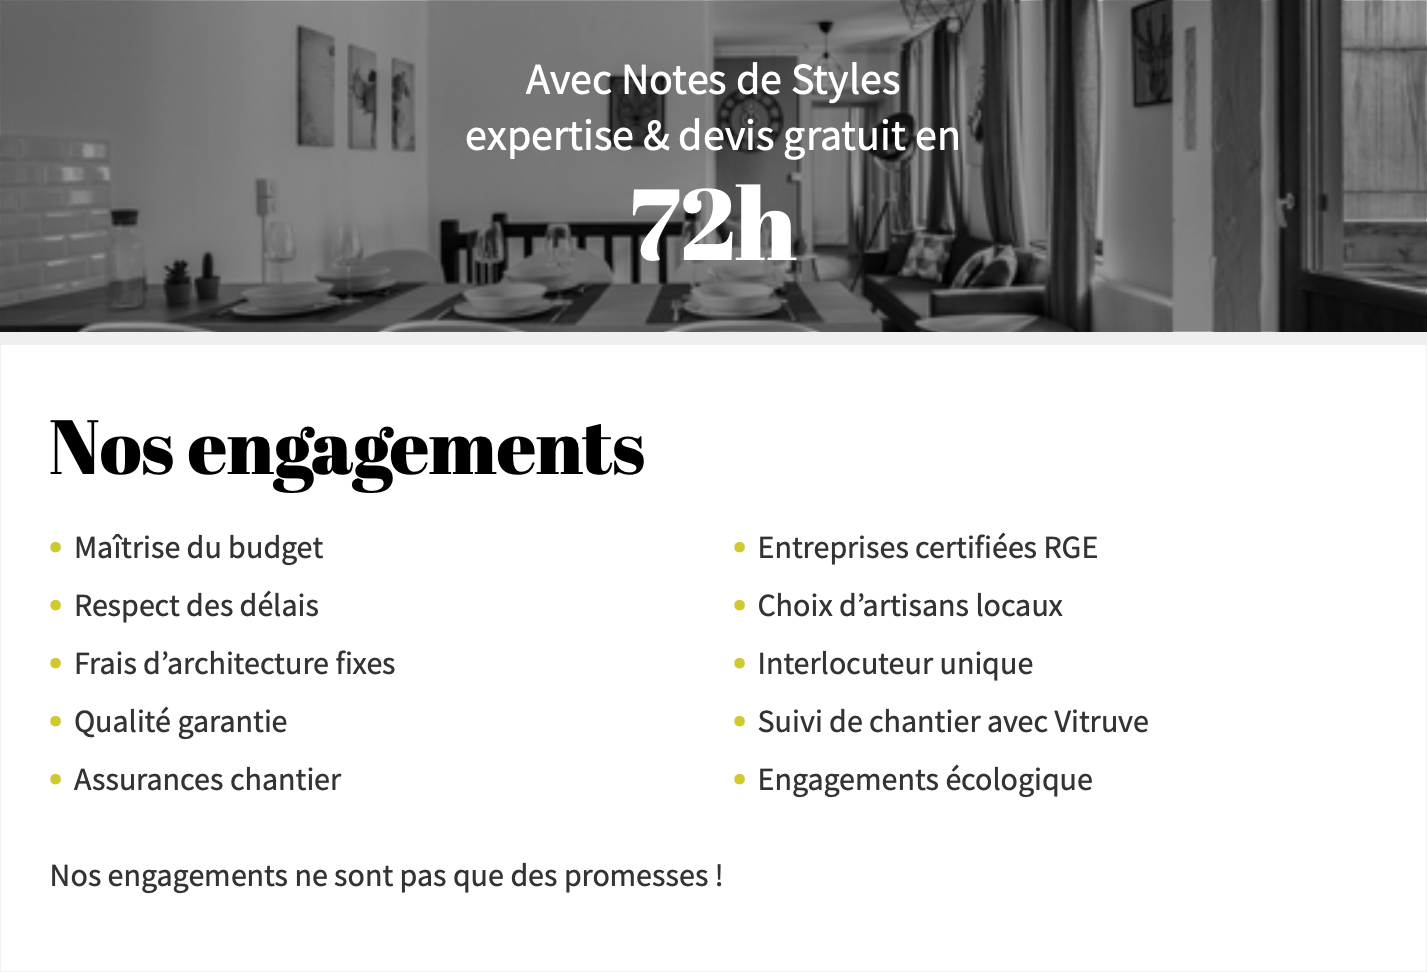 Notes de Styles Pyrénées-Atlantiques - Pays Basque - Nos engagements